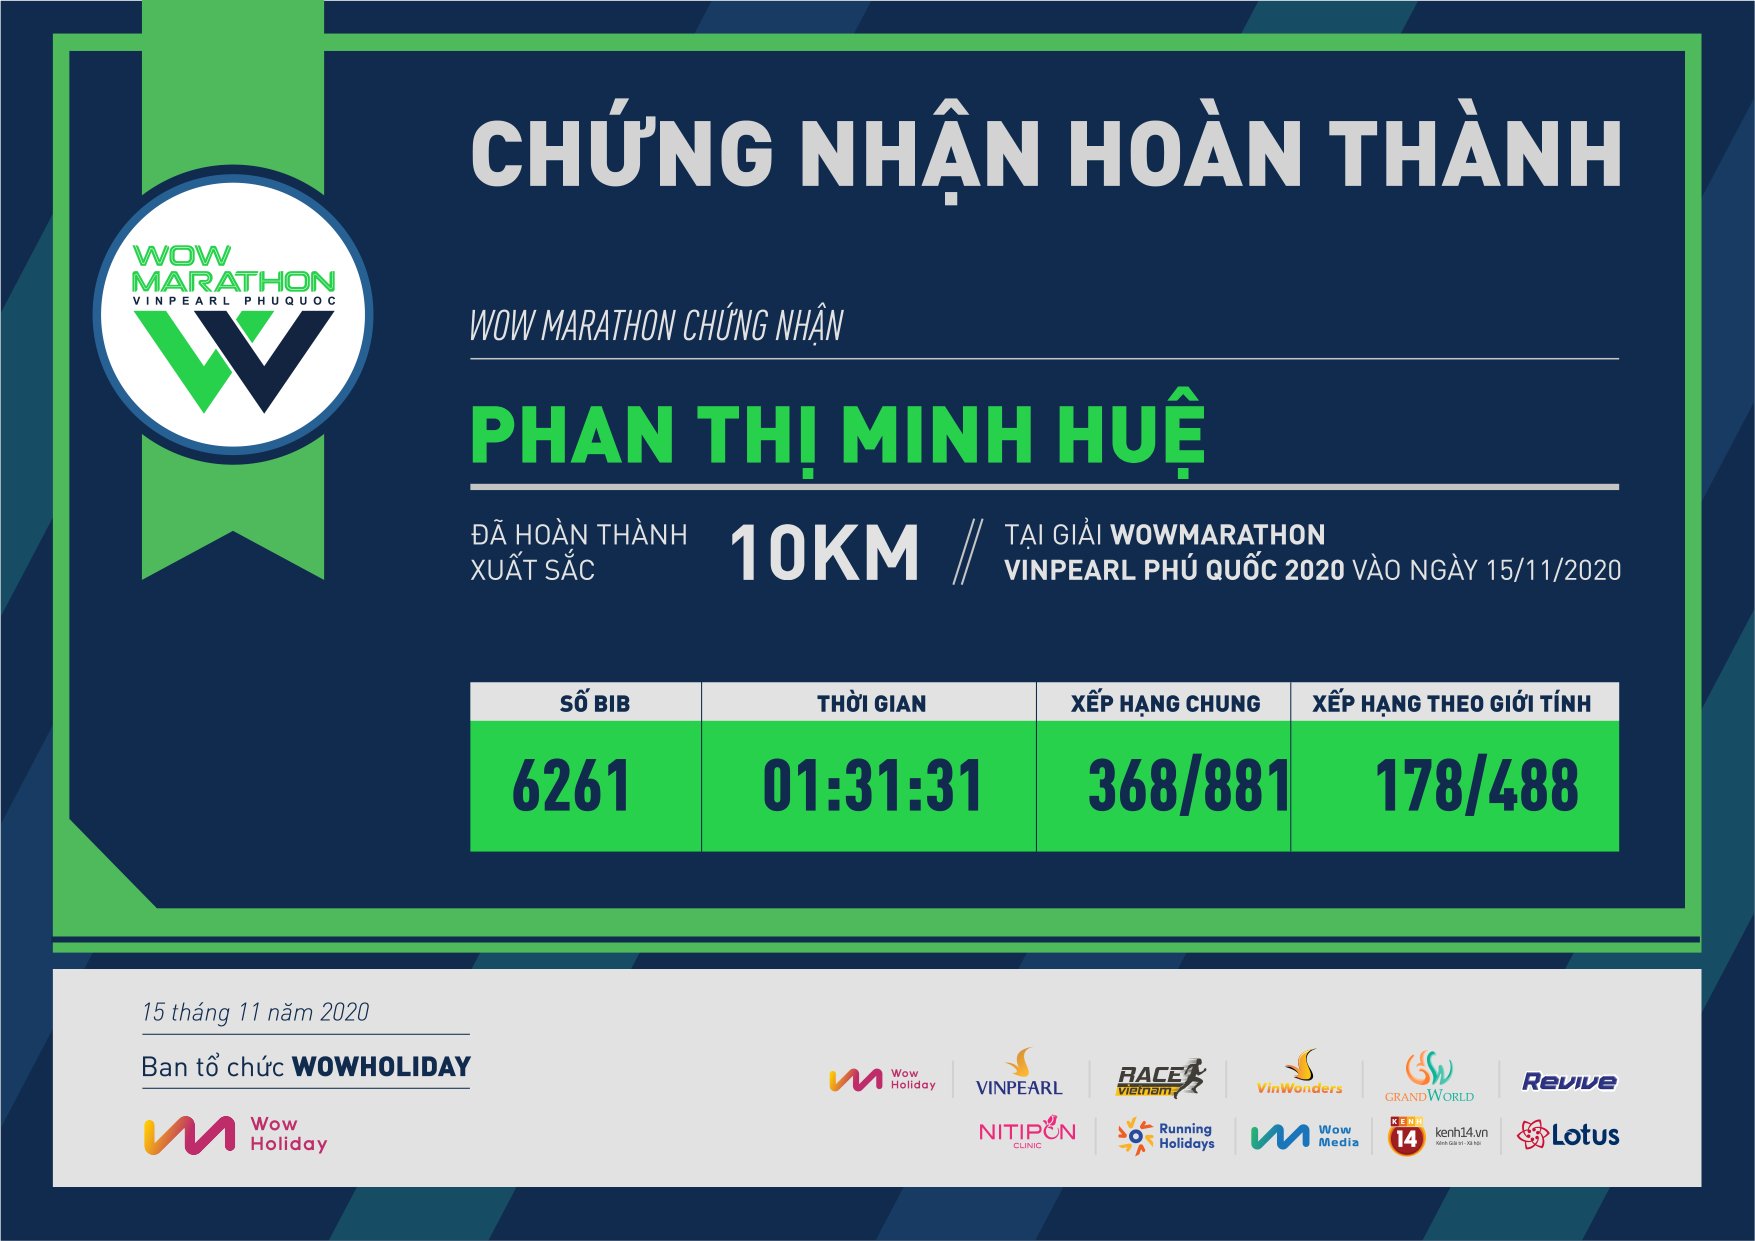 6261 - Phan Thị Minh Huệ